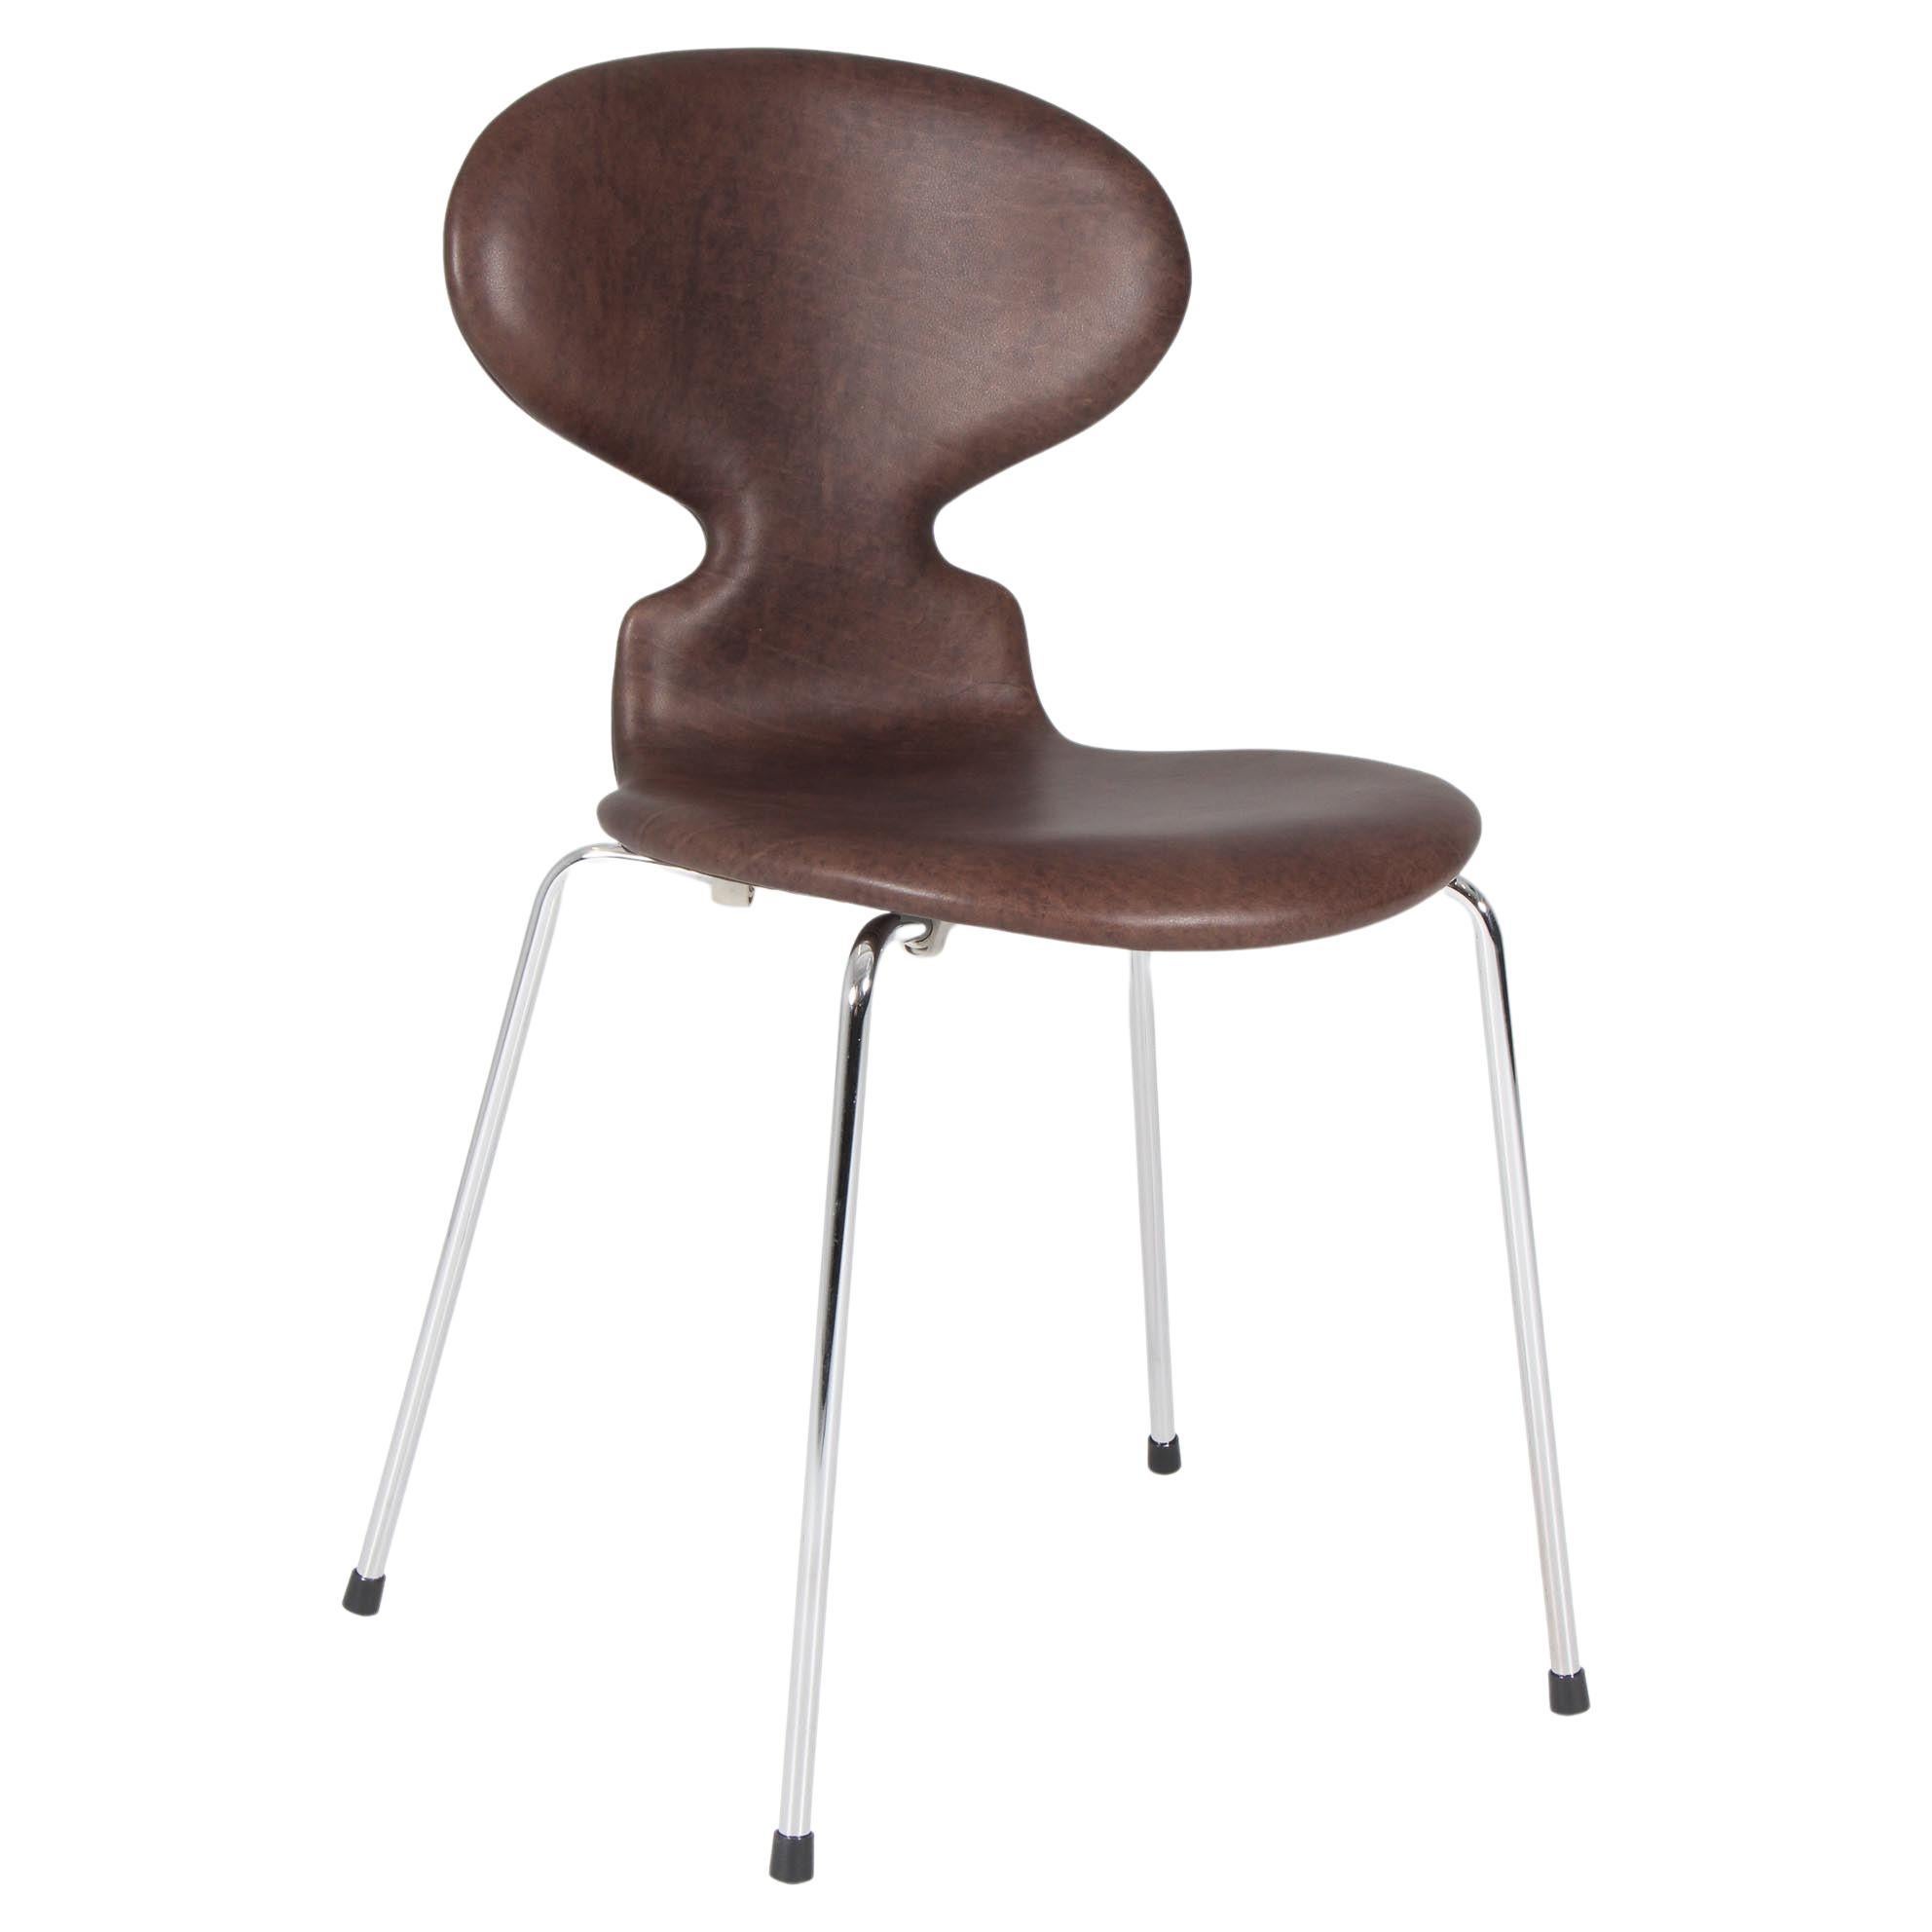 Arne Jacobsen, chaise de salle à manger modèle 3101 « Ant »